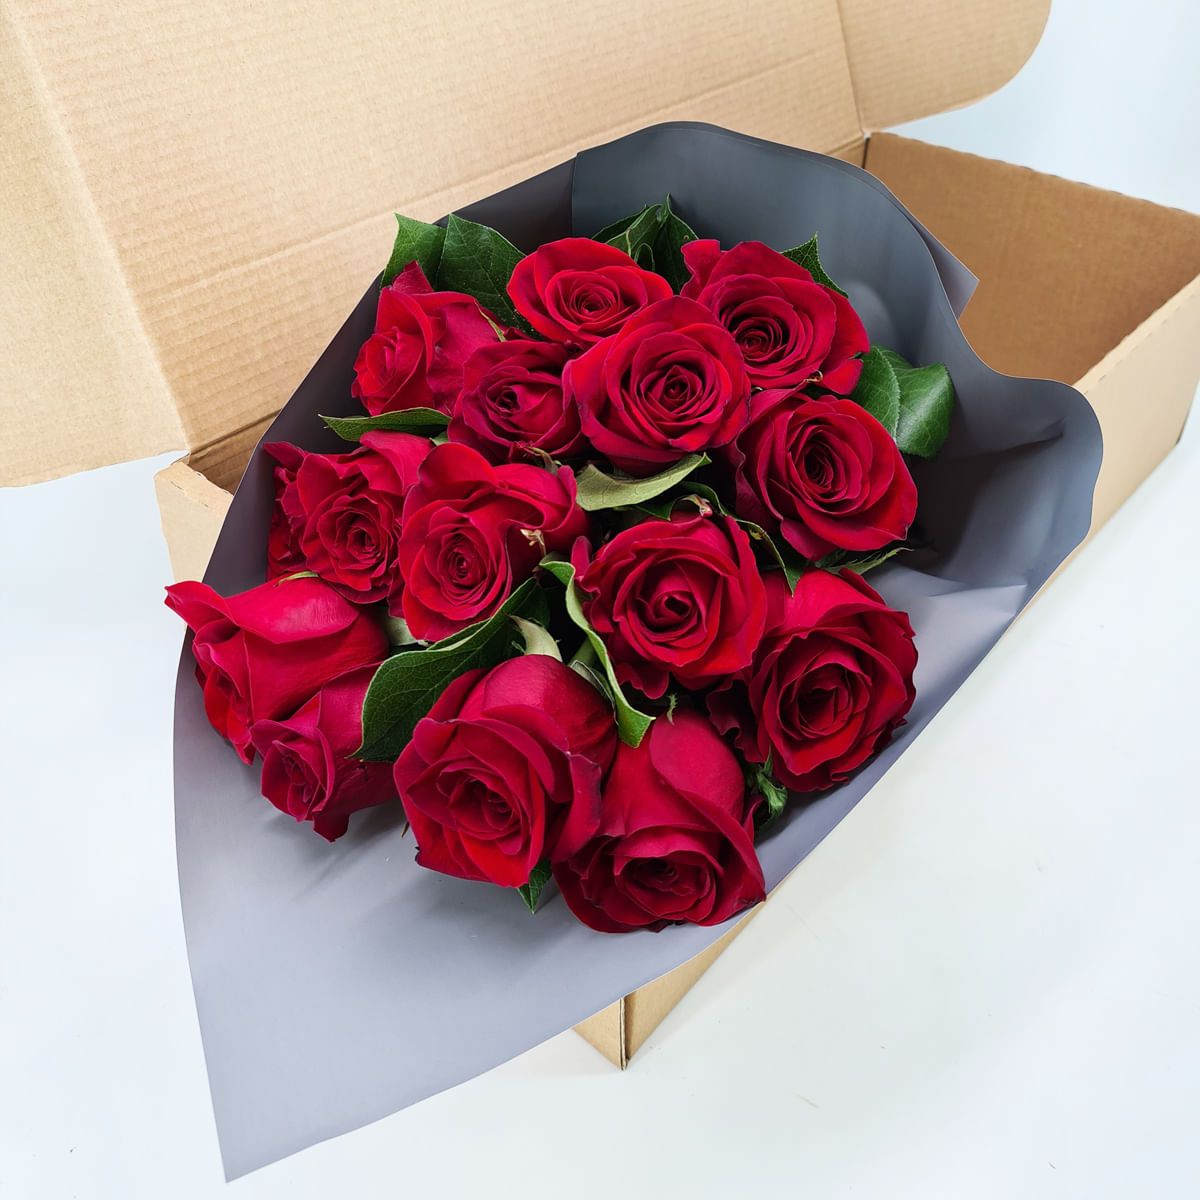 Buchet de 15 trandafiri rosii in cutie Buchet